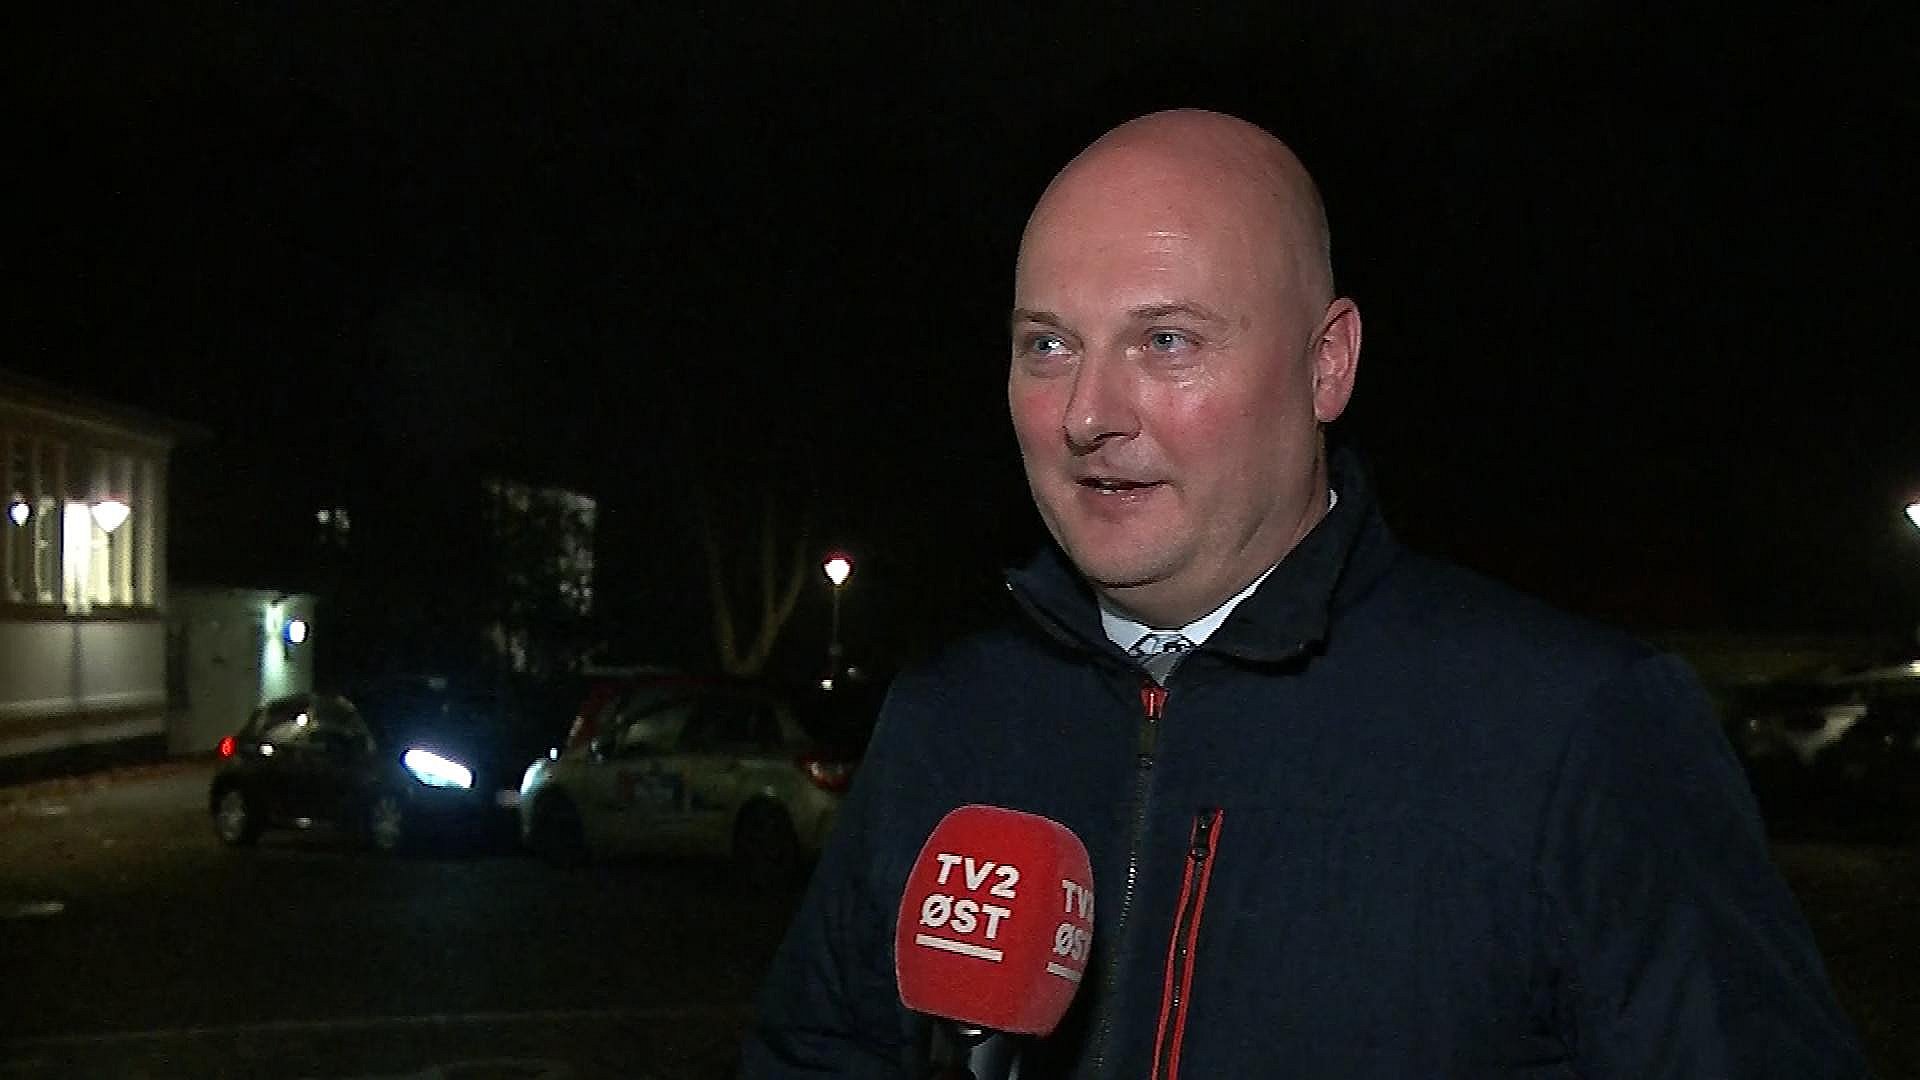 fejl stemme Remission Vive genvinder borgmesterposten i Faxe med støtte fra blå blok | TV2 ØST